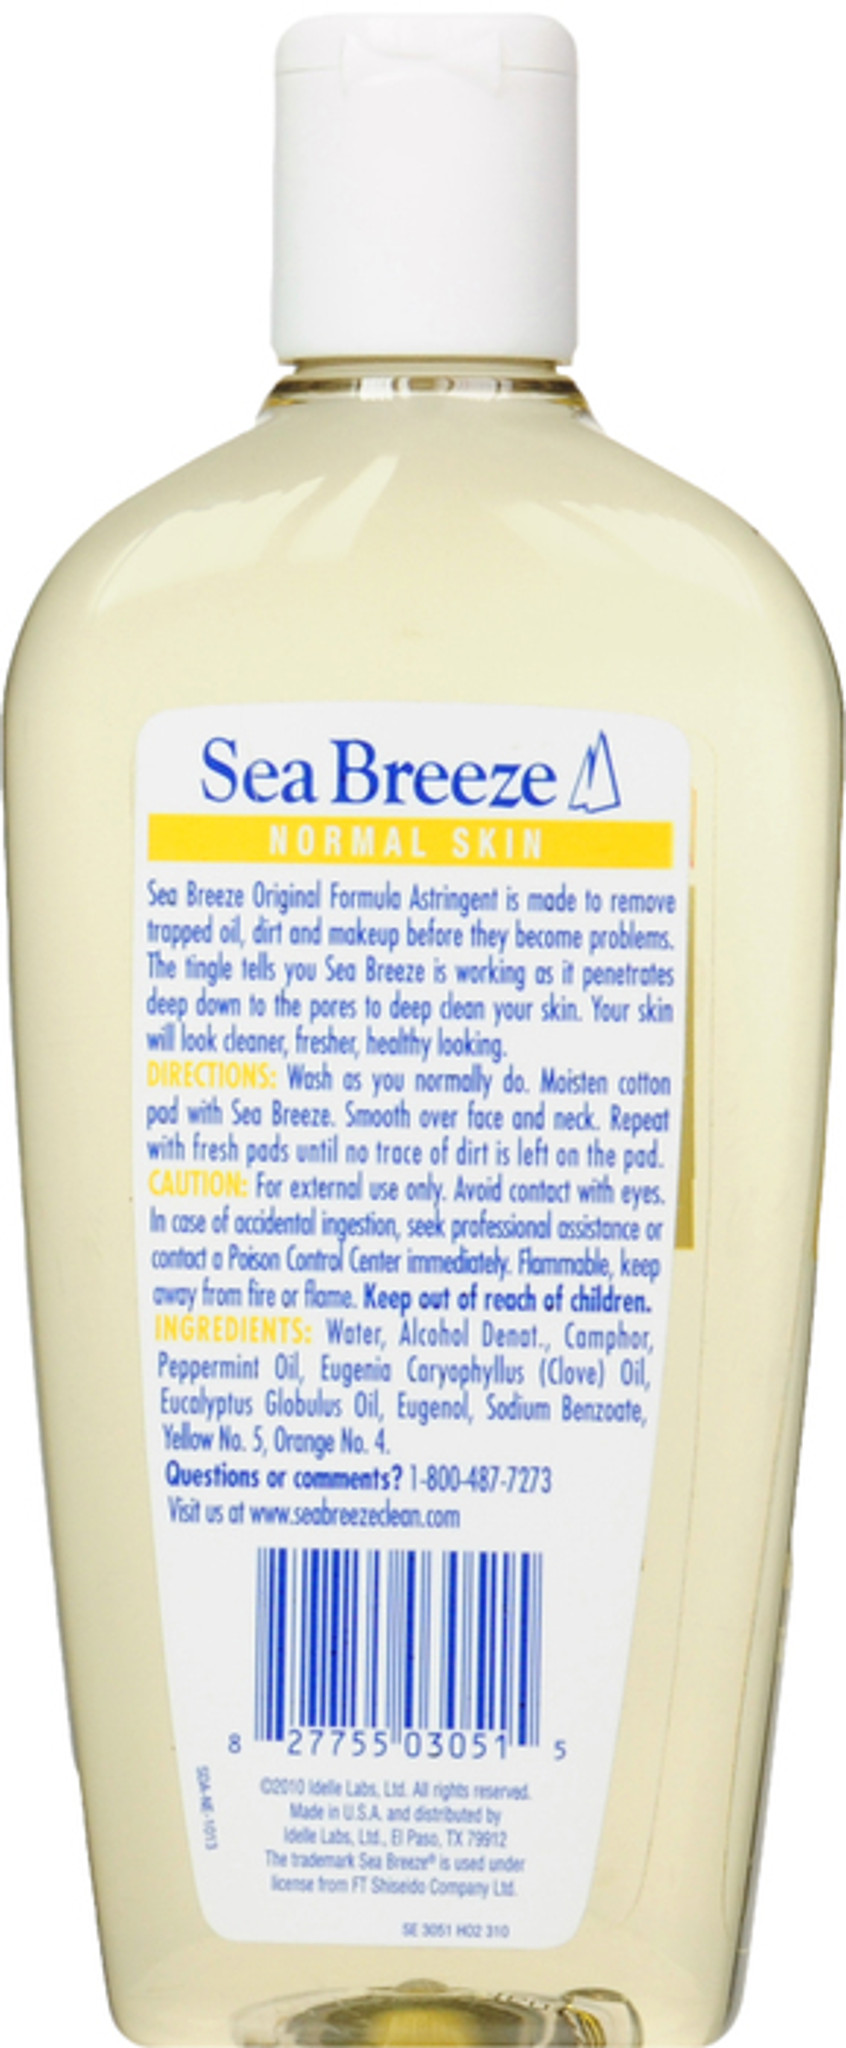 Sea Breeze Original Astringent 10 Oz